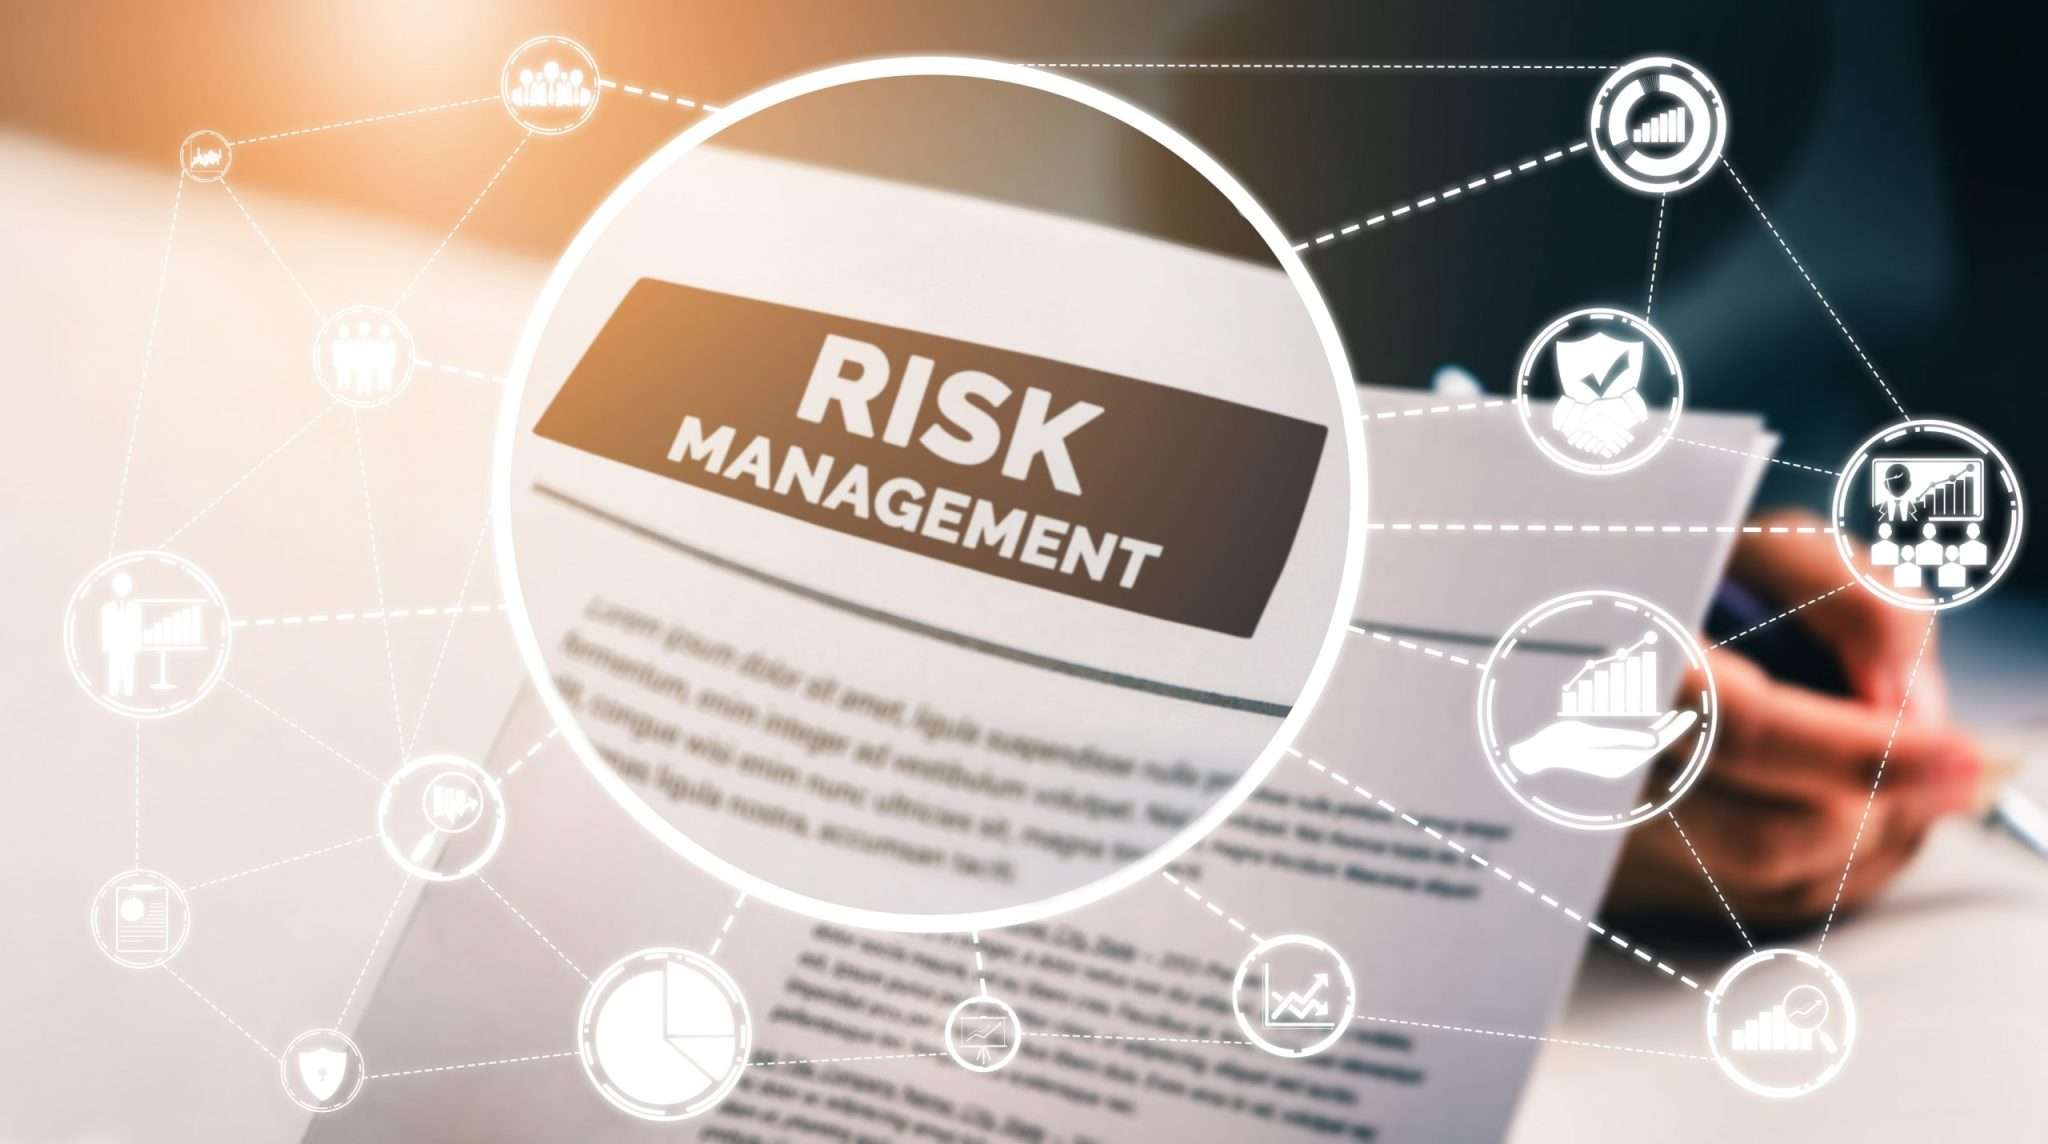 Risk Management Framework – Managing & Measuring what matters